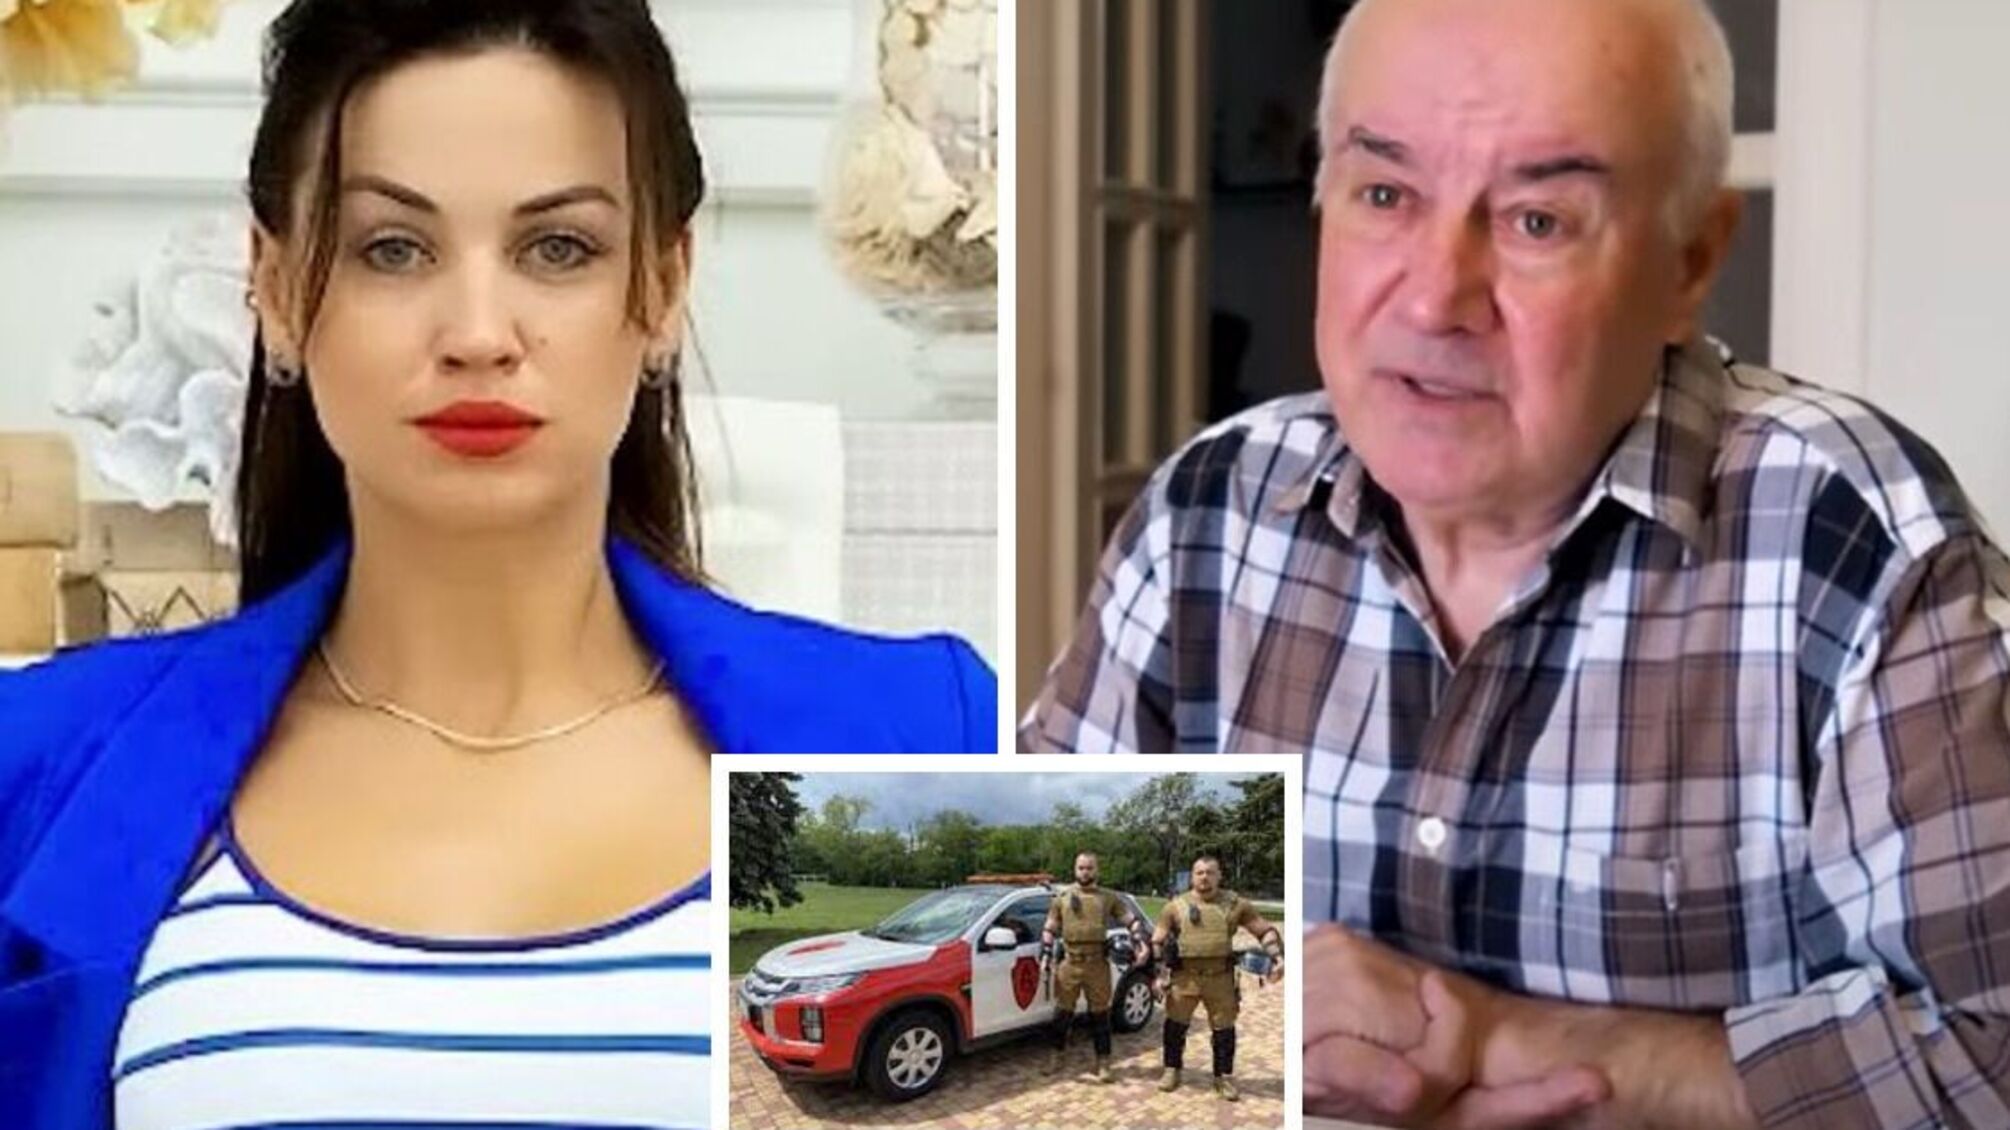 'З‘явитеся – будете арештовані', – керівник одеської охоронної фірми погрожує парі пенсонерів (відео)